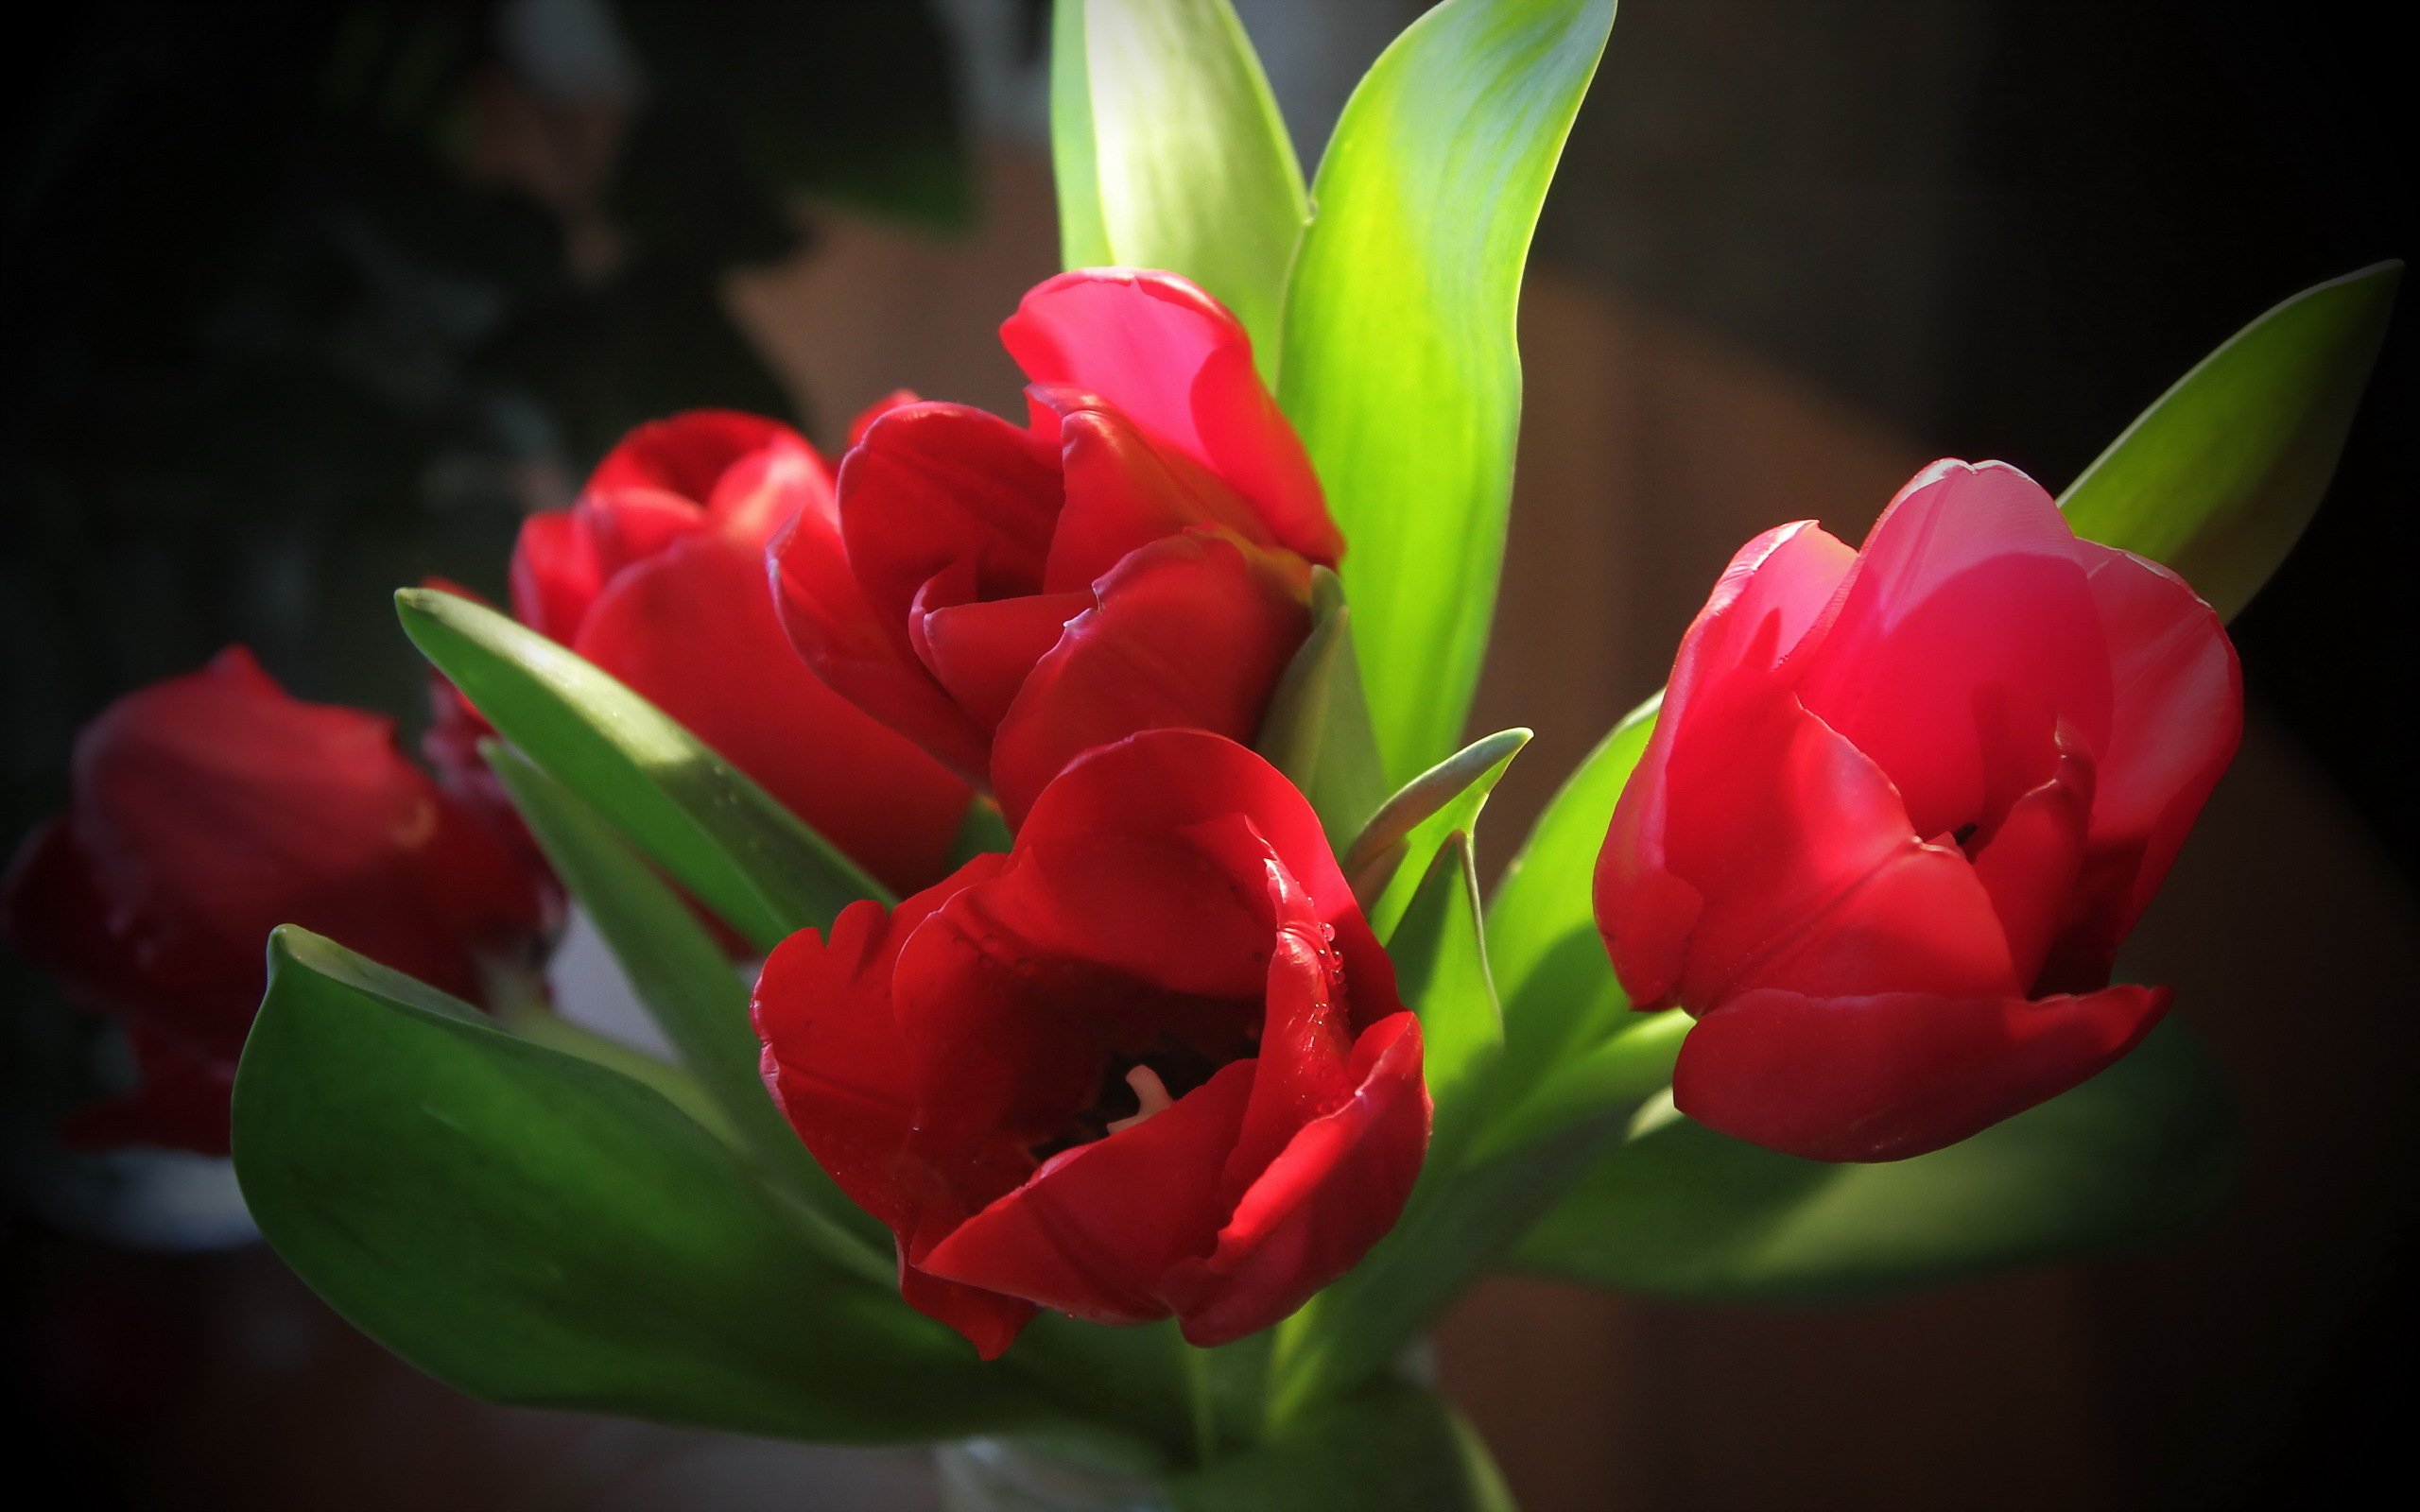 Тюльпаны картинки хорошего качества. Тюльпан Red Pride. Тюльпан panenka. Цветы тюльпаны. Красивые тюльпаны.